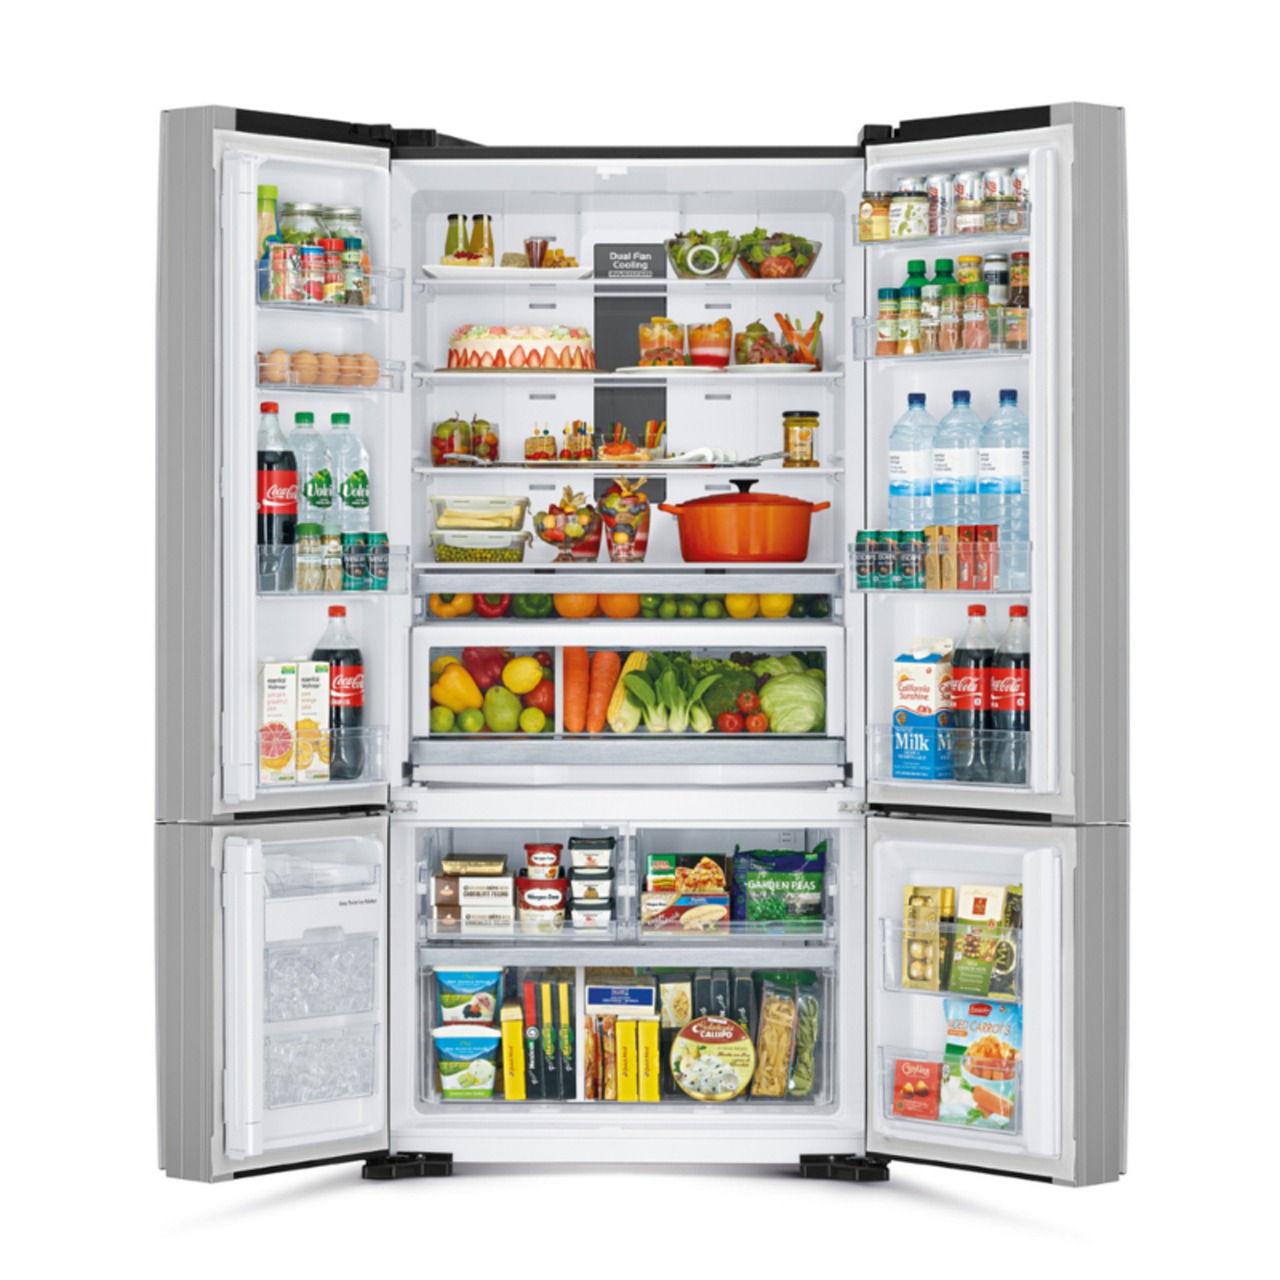 hitachi-multi-door-refrigerator-6266613_1280